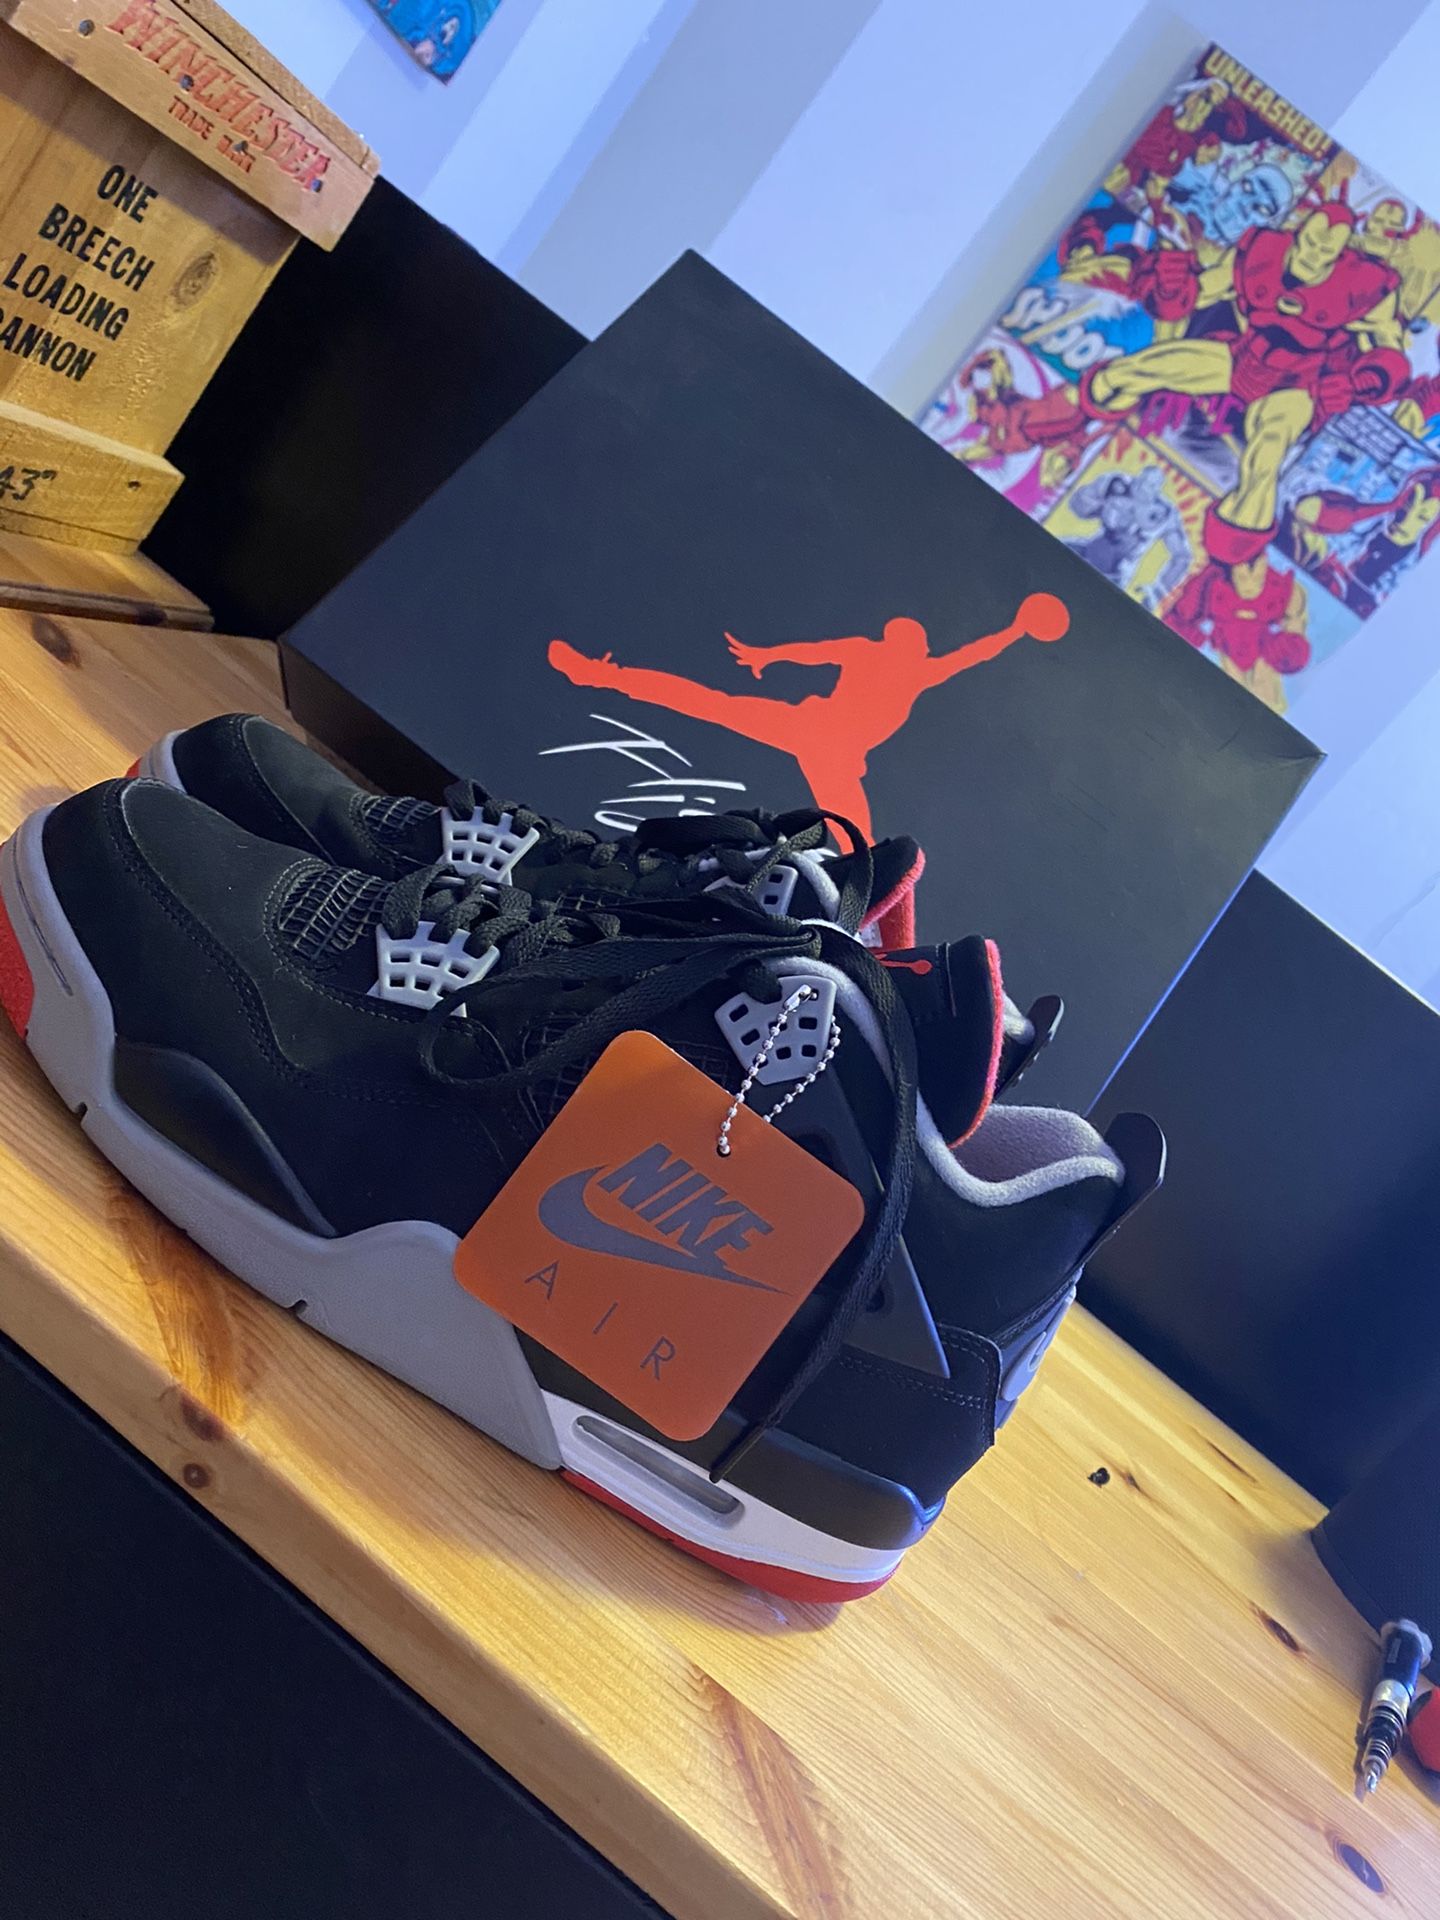 Air Jordan Retro OG ‘Bred’ 2019 Size 8.5 Men’s